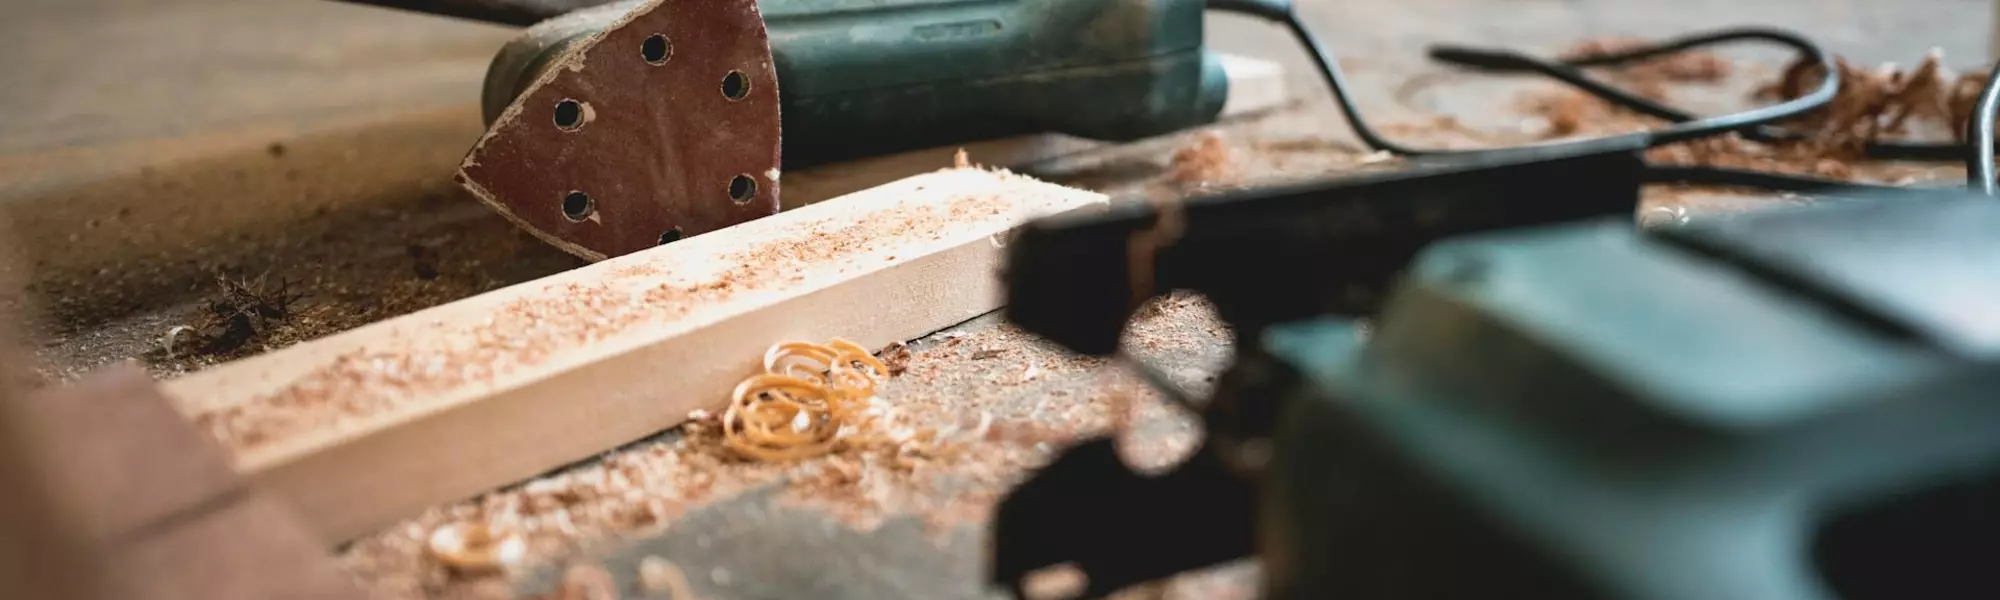 Detailaufnahme von Schleifgerät und Stichsäge auf Arbeitstisch mit Holzlatte und Holzspänen